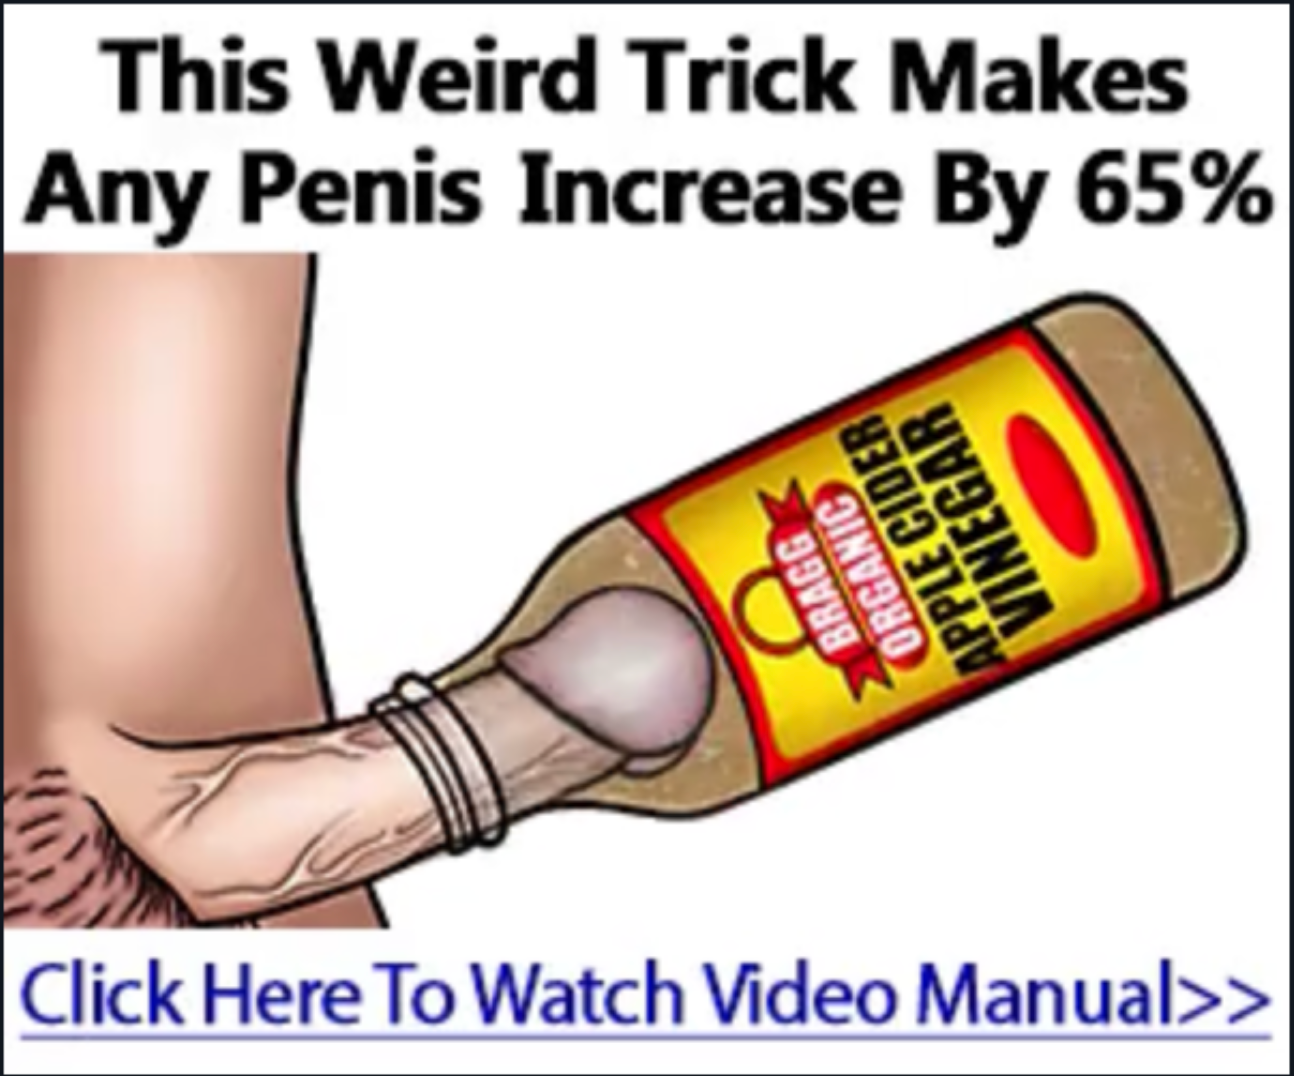 Make dick.bigger real trick